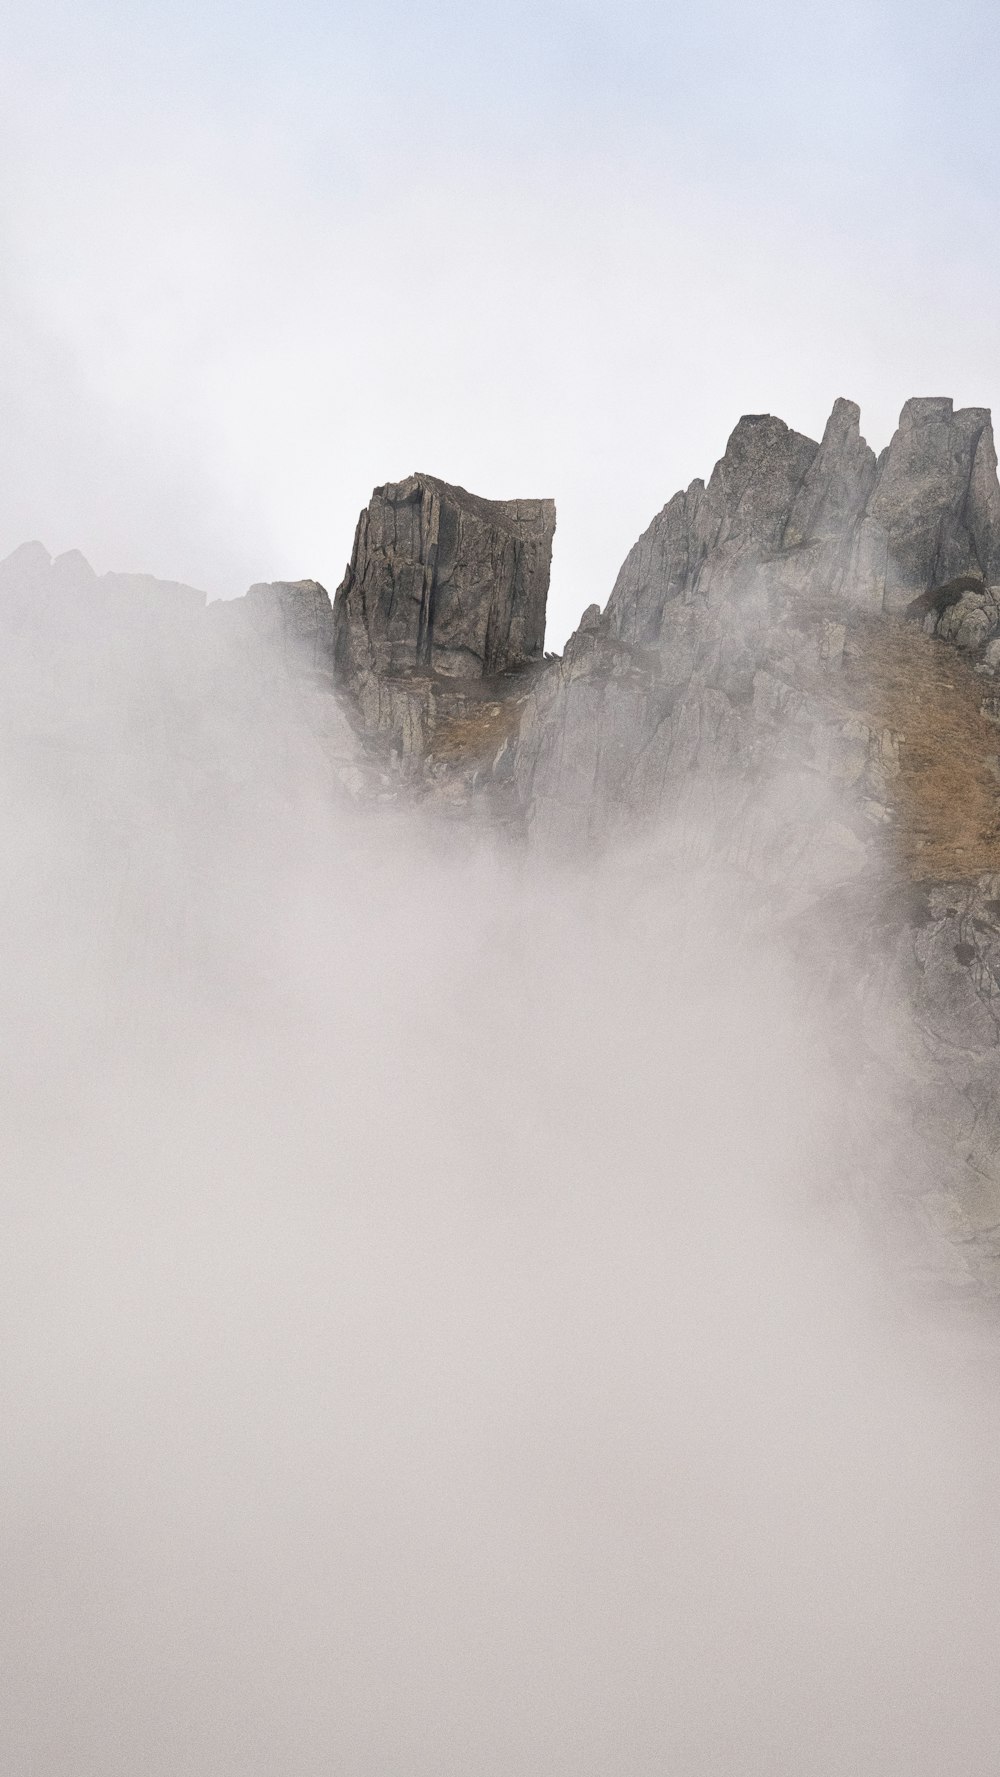 Una montagna coperta di nebbia con una persona su un cavallo